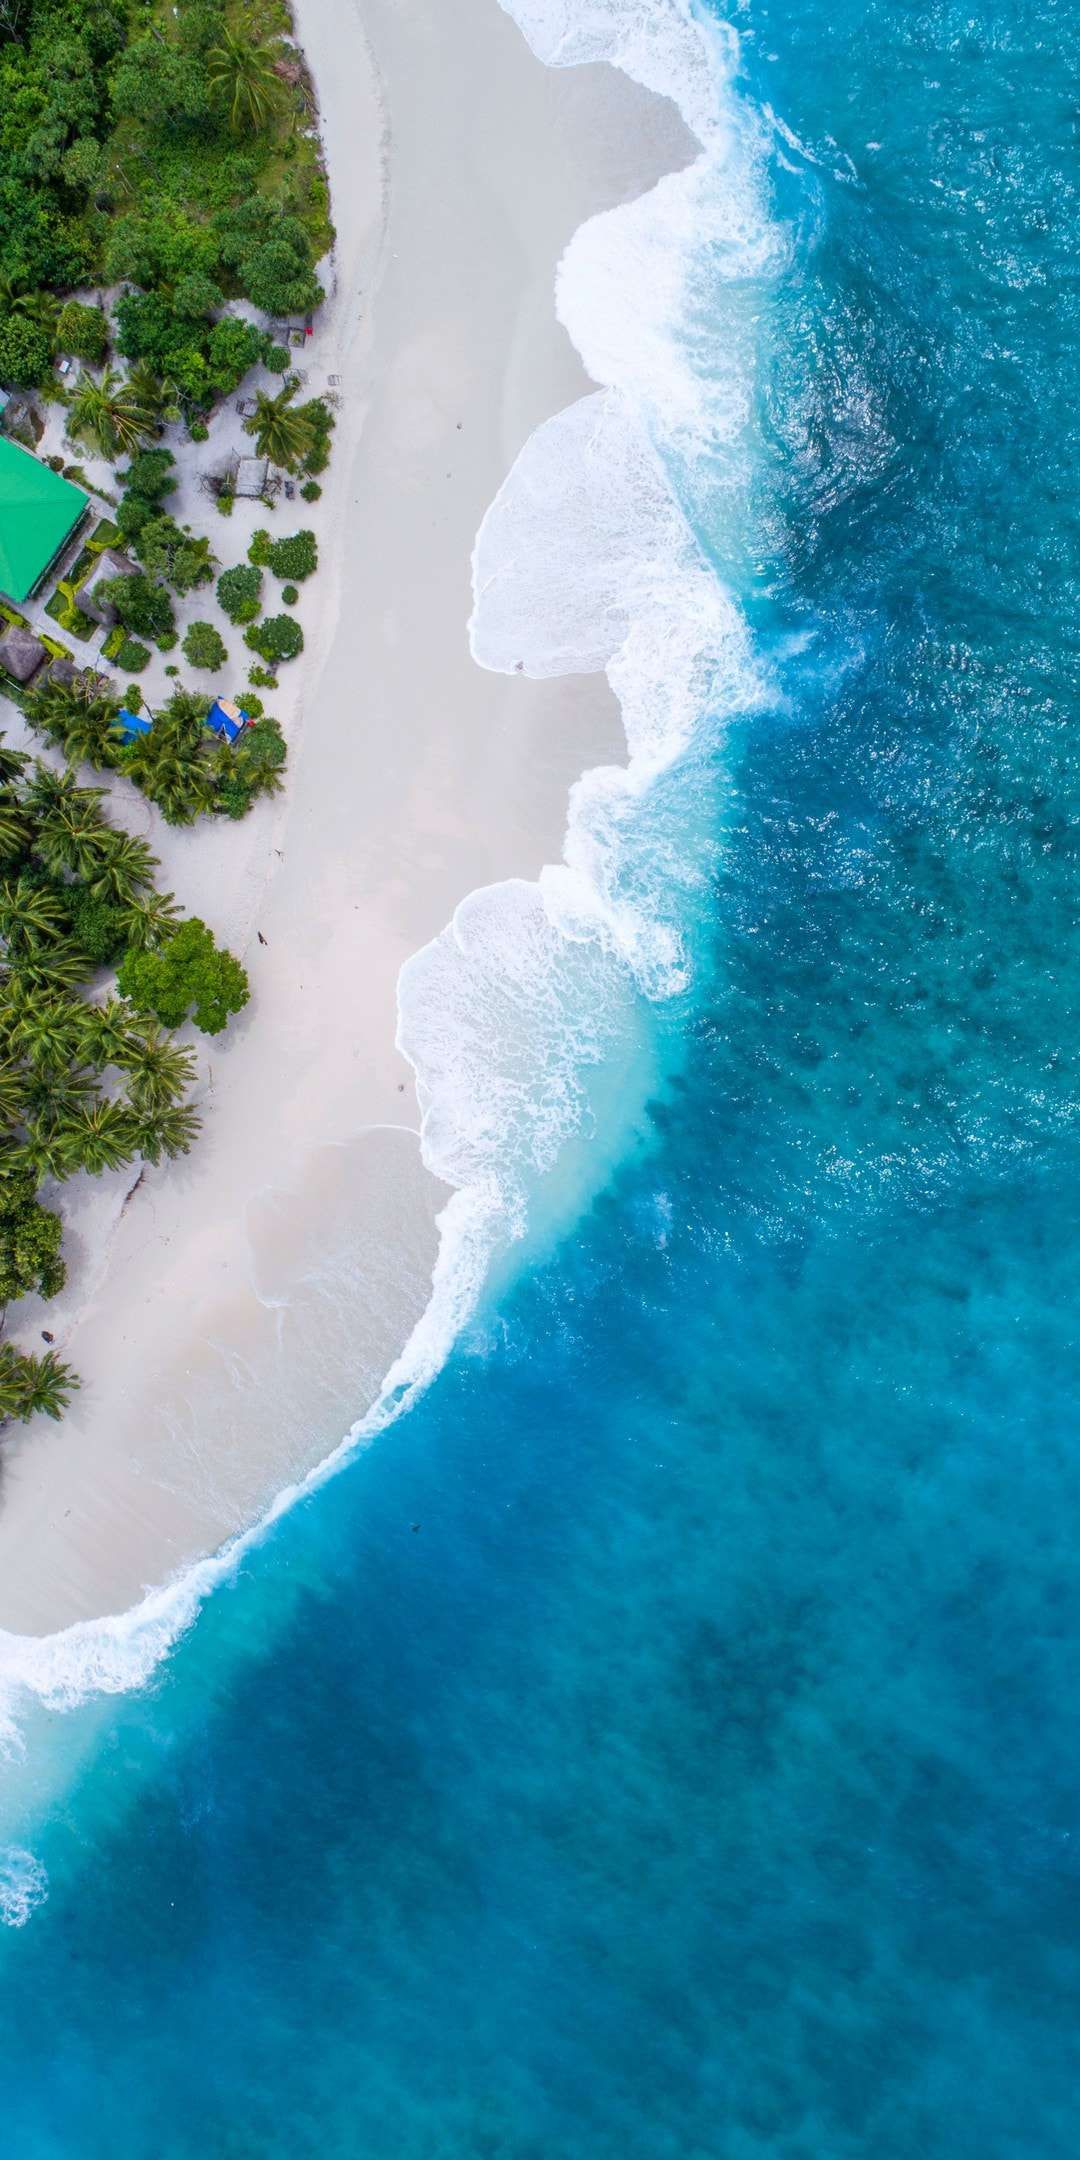 Maldives Beach Beautiful Aerial View iPhone Wallpaper B L U E in 1080x2160